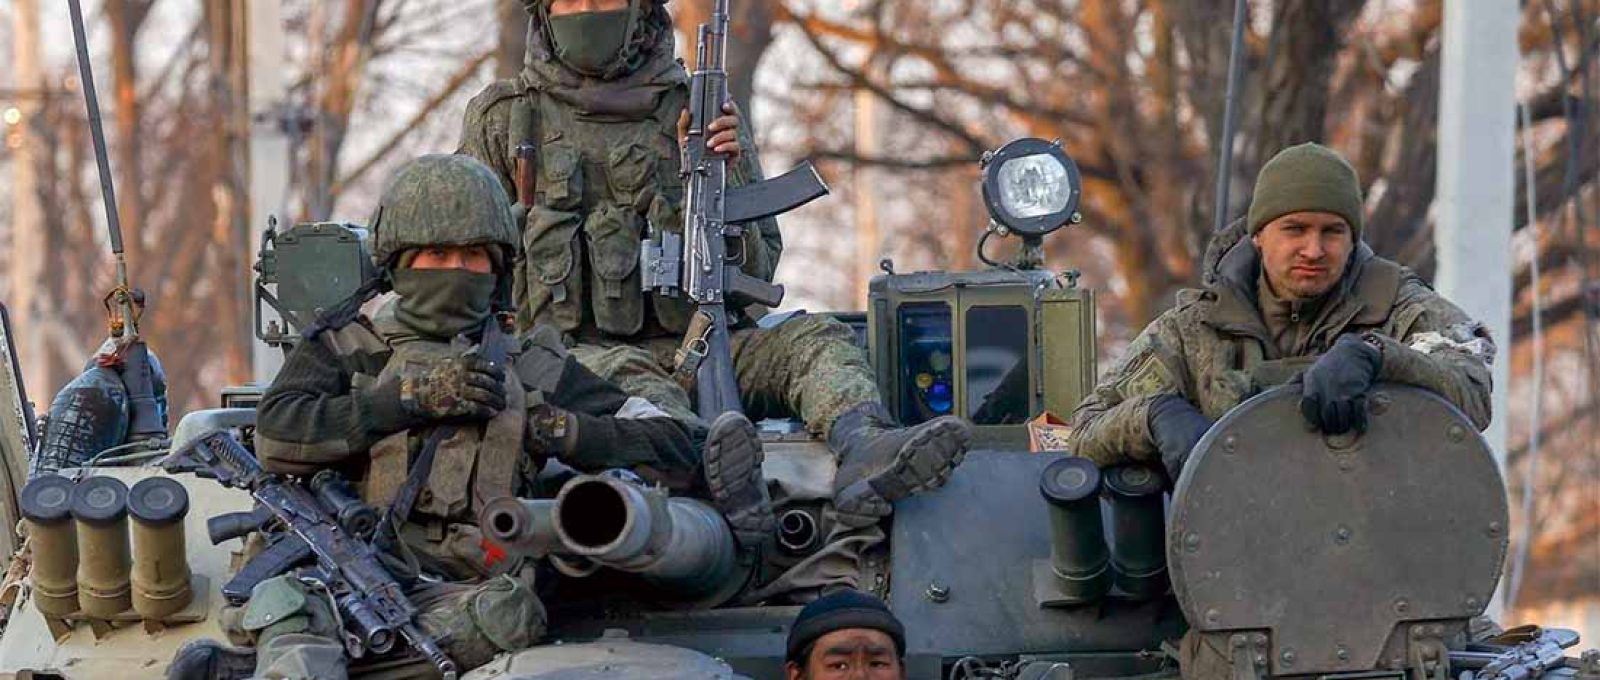 Soldados russos no distrito de Volnovakha, em Donetsk, Ucrânia, controlada pelos separatistas pró-Rússia, 26 de março de 2022 (Sefa Karacan/ Anadolu via Getty Images).